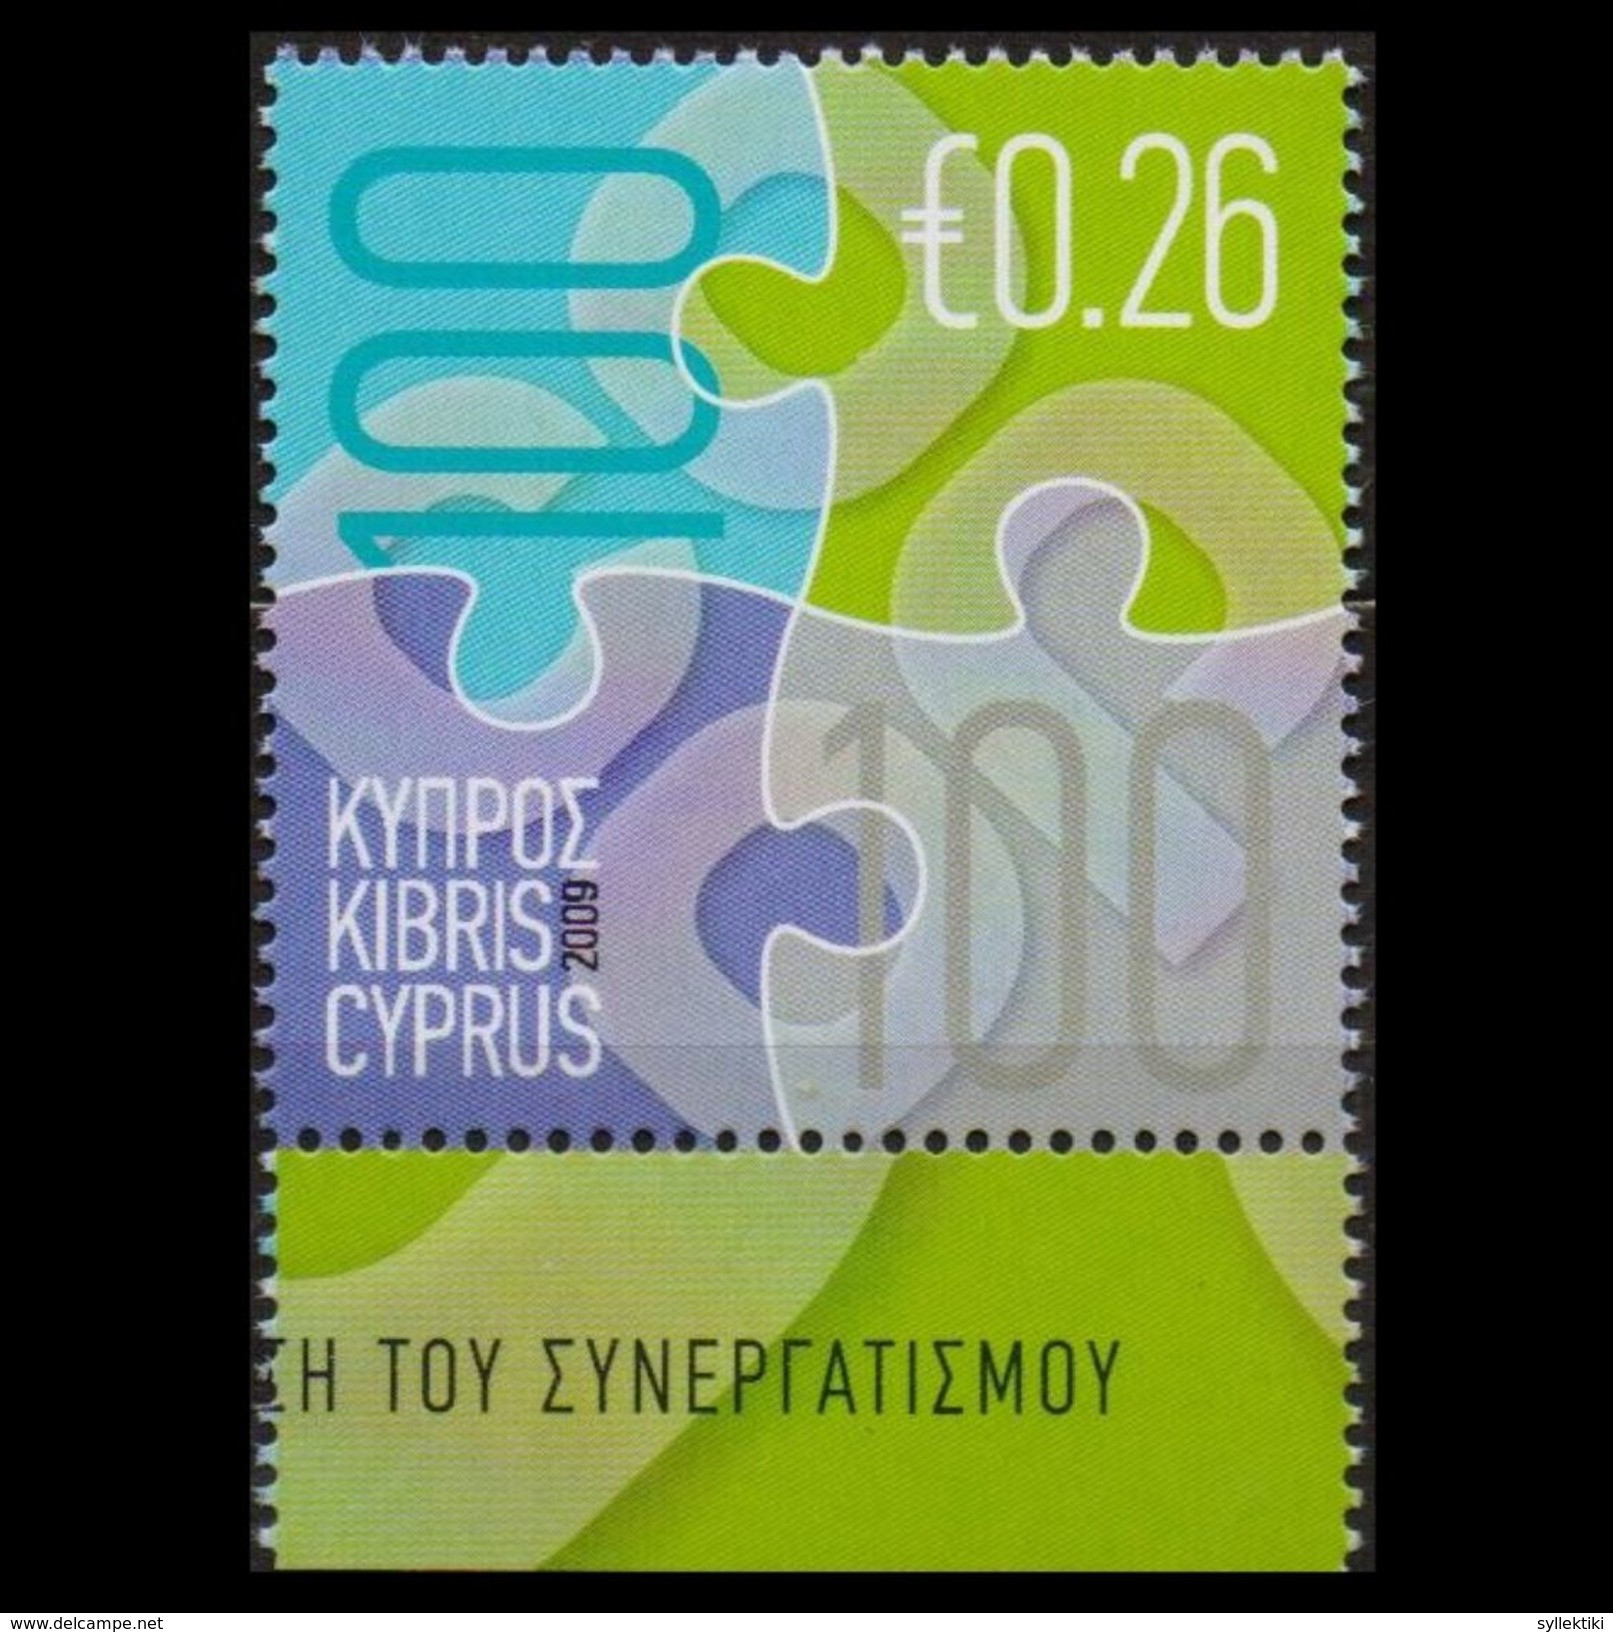 CYPRUS 2009 COOPERATION MNH STAMP - Ongebruikt